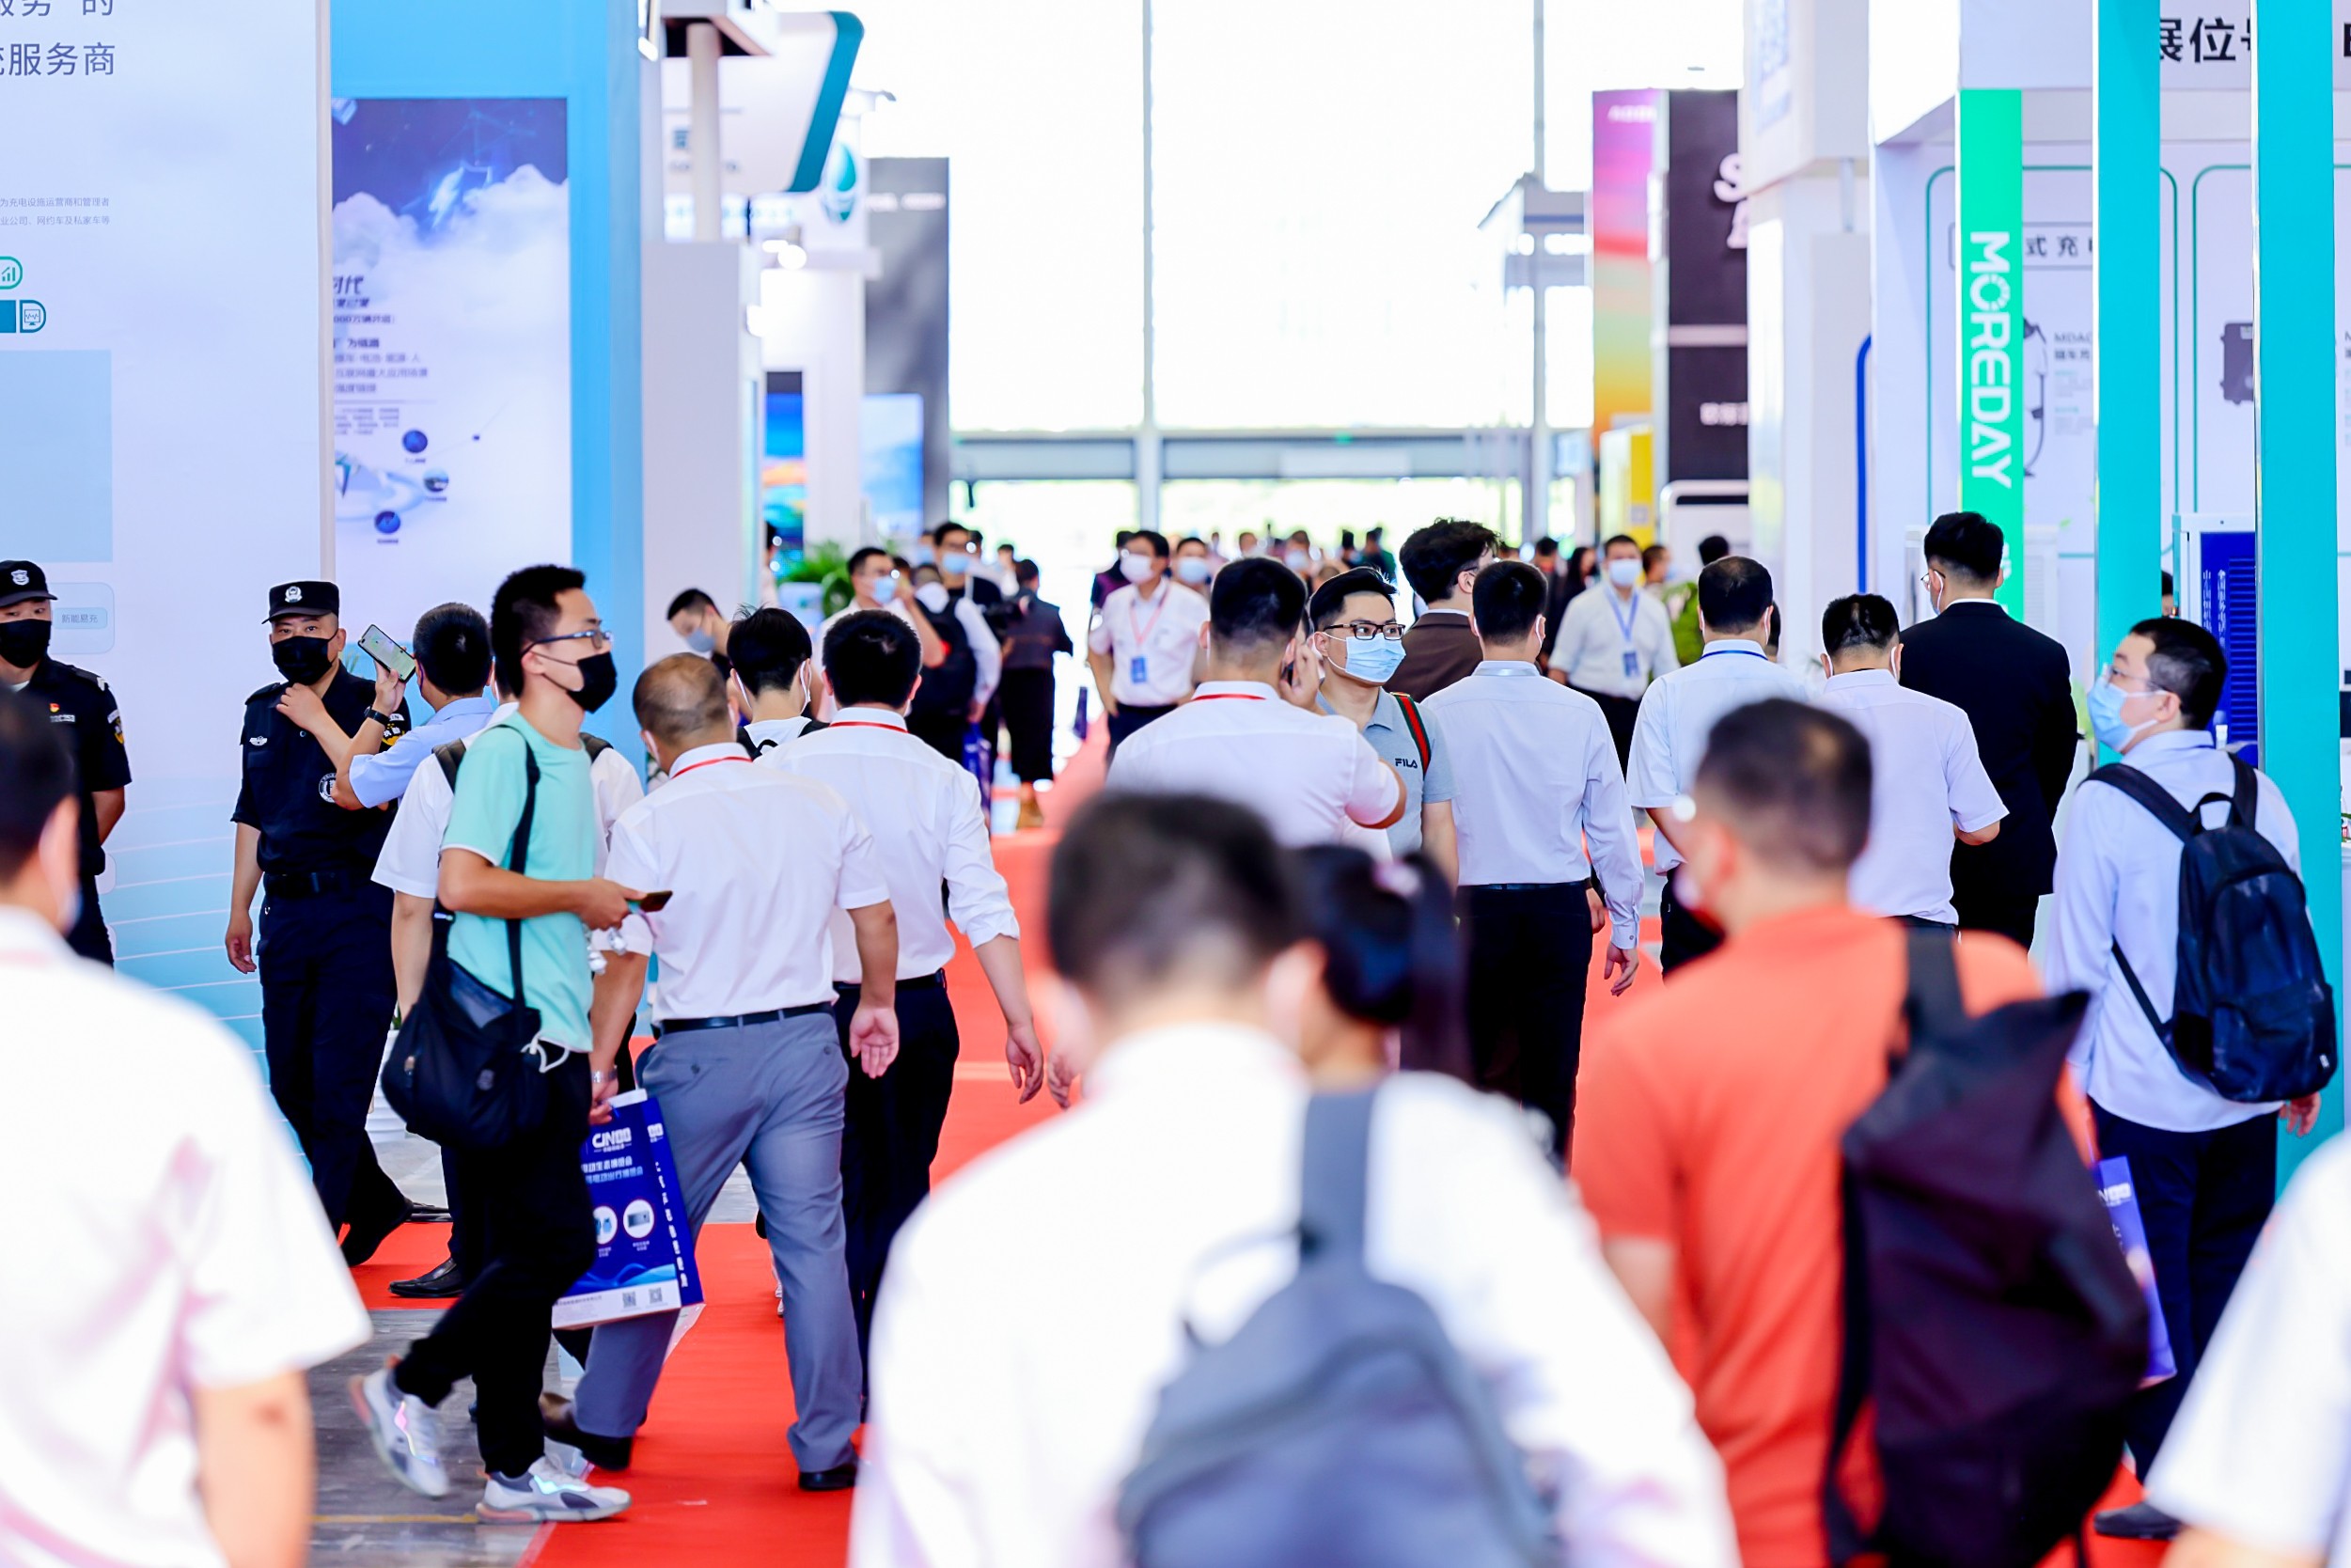 2023充电桩展|第七届南京电动车充电技术博览会&第二届电动生态大会 全面启动9月6-8日南京见